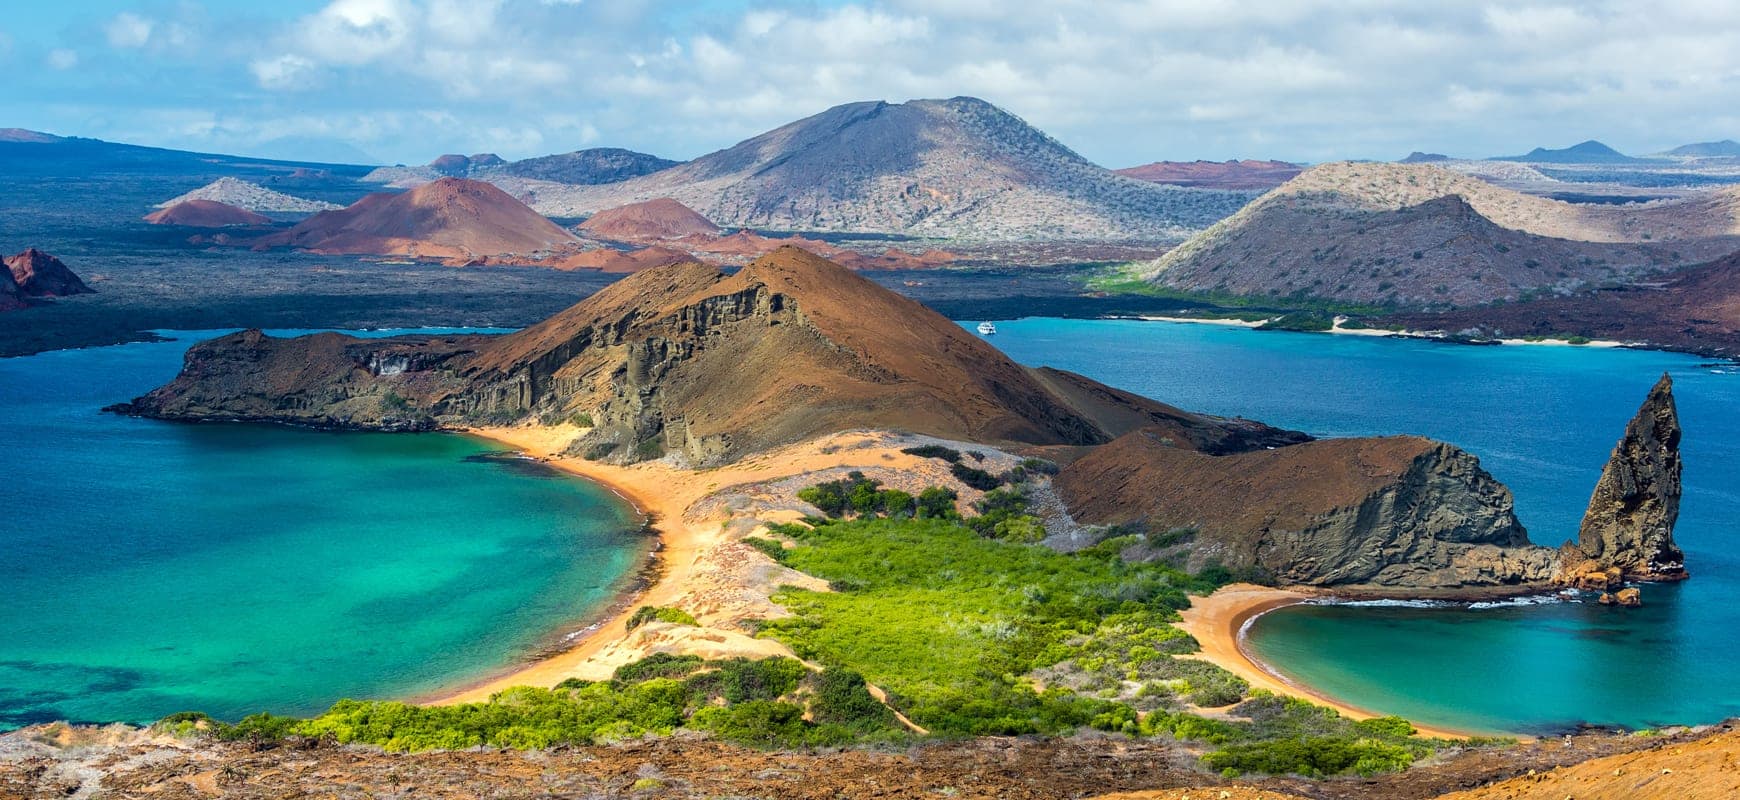 Duiken op de Galapagos Eilanden